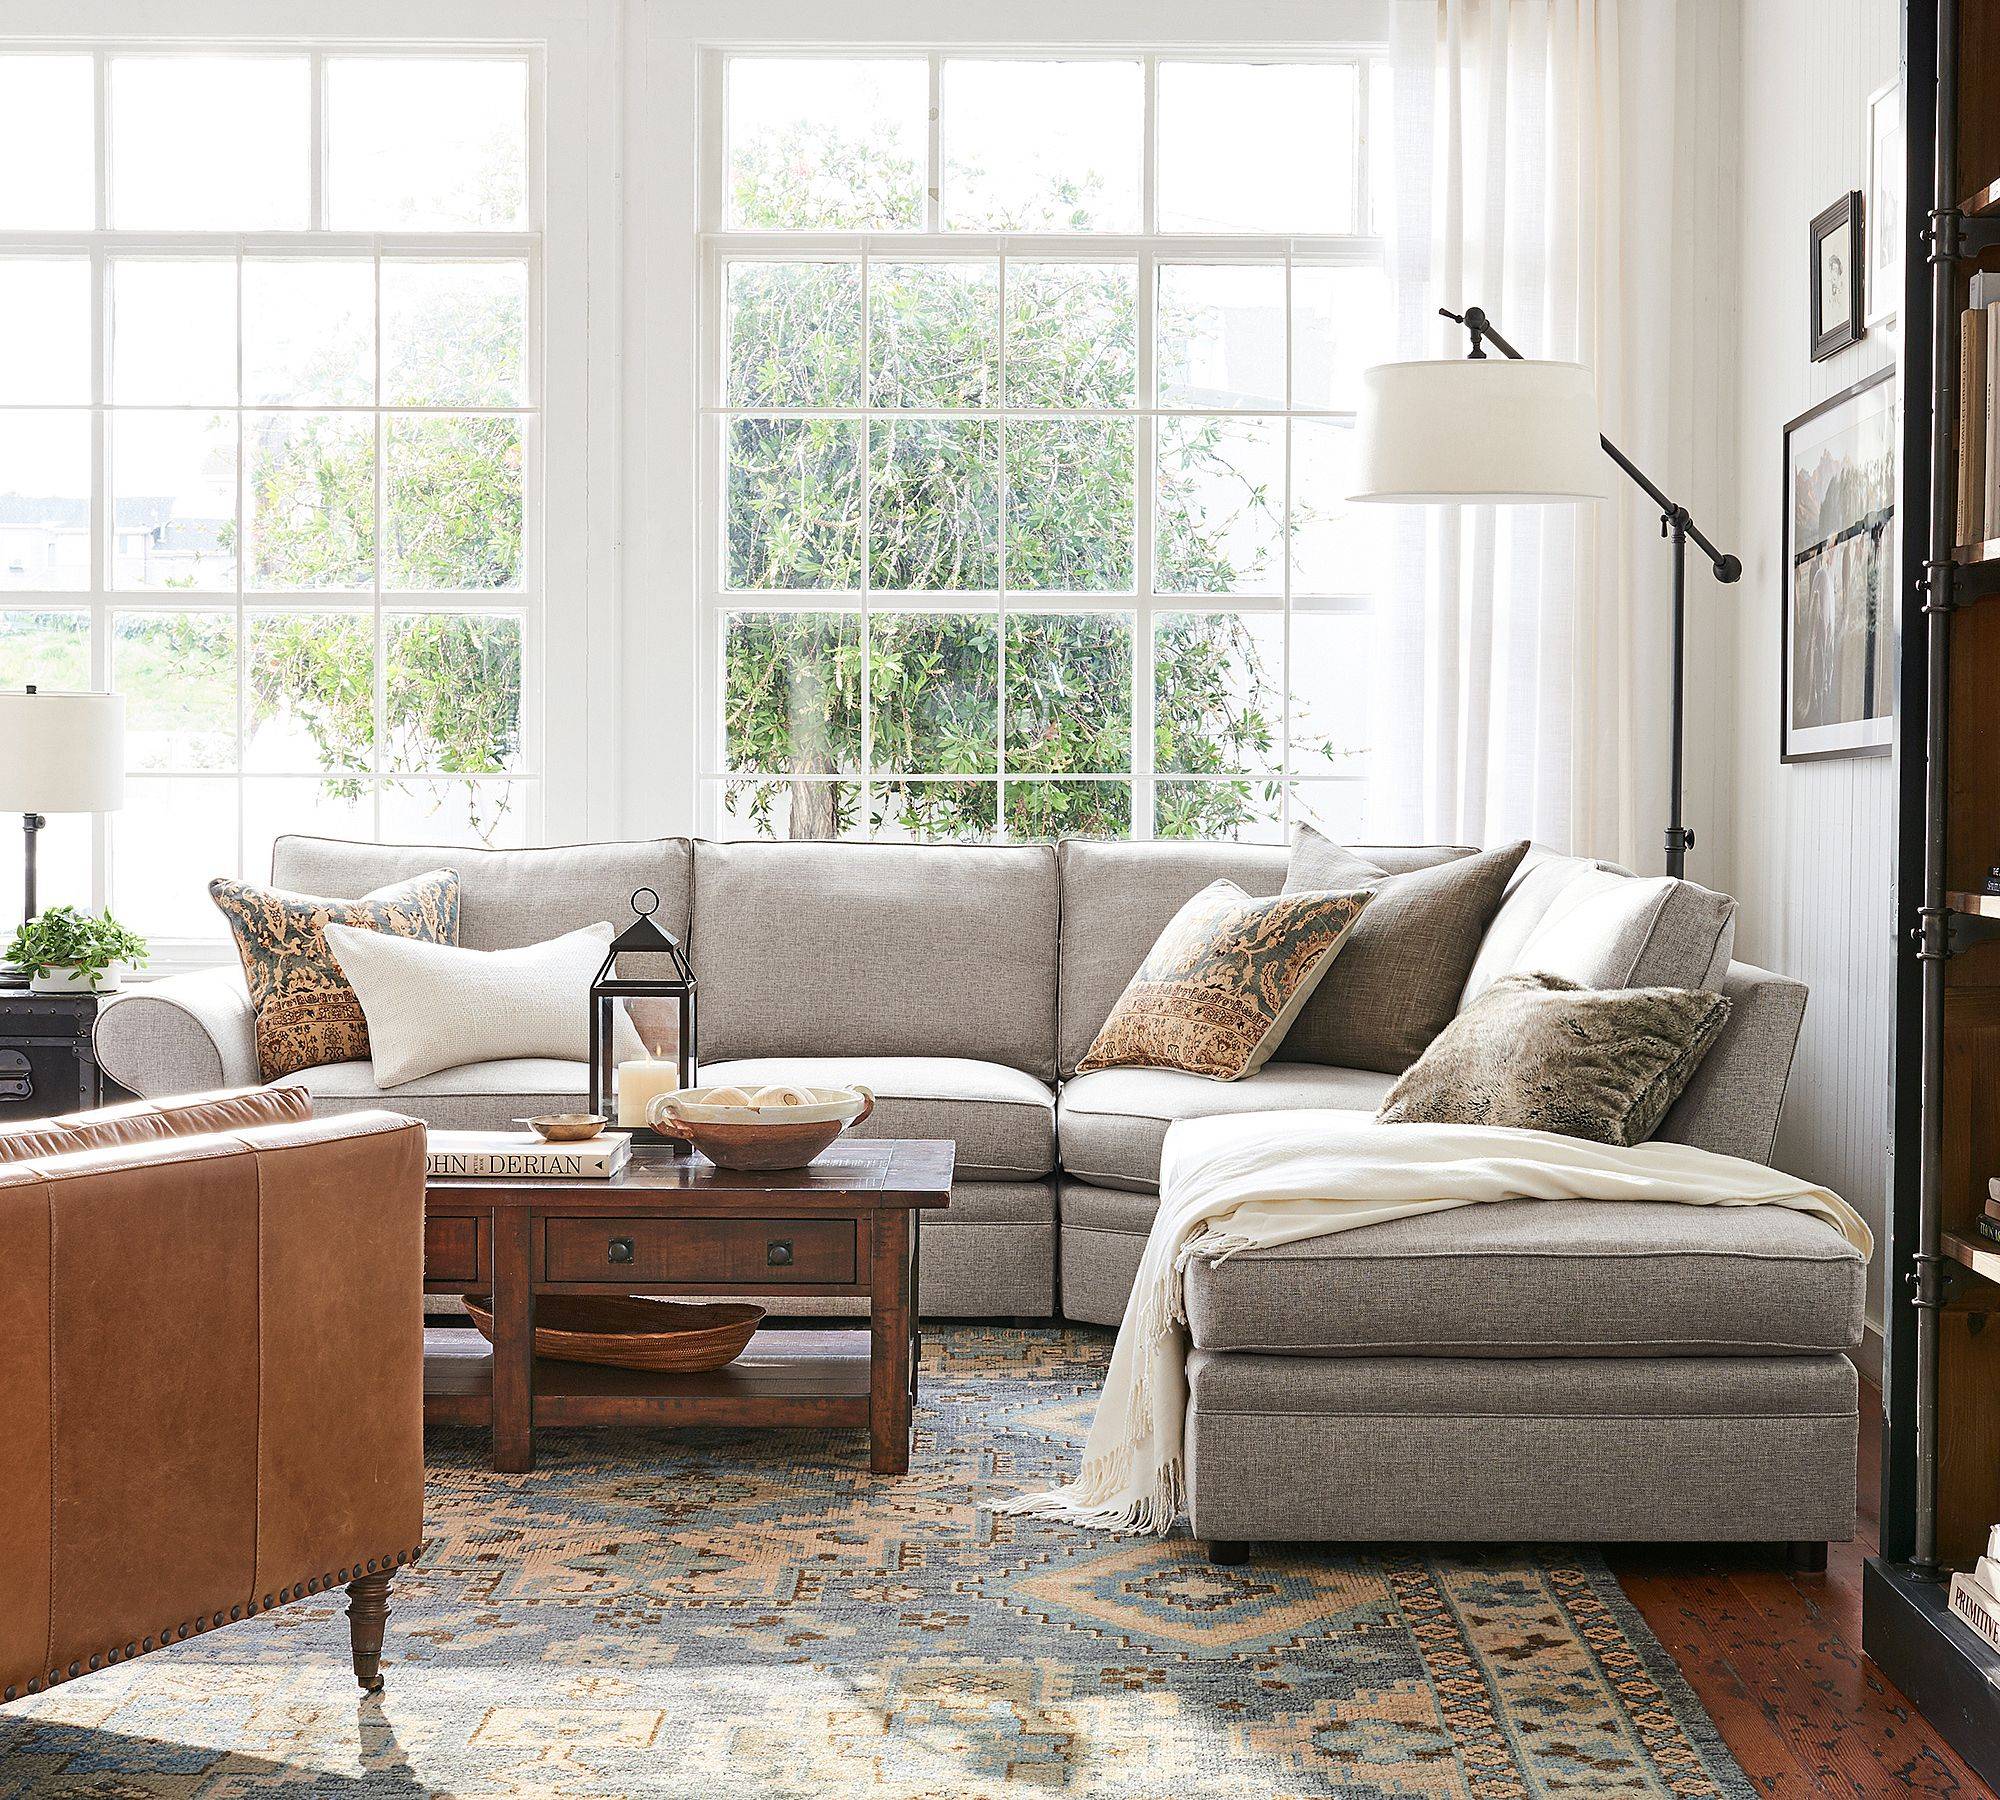 foto do produto: sofá de cerâmica na sala com almofadas rústicas